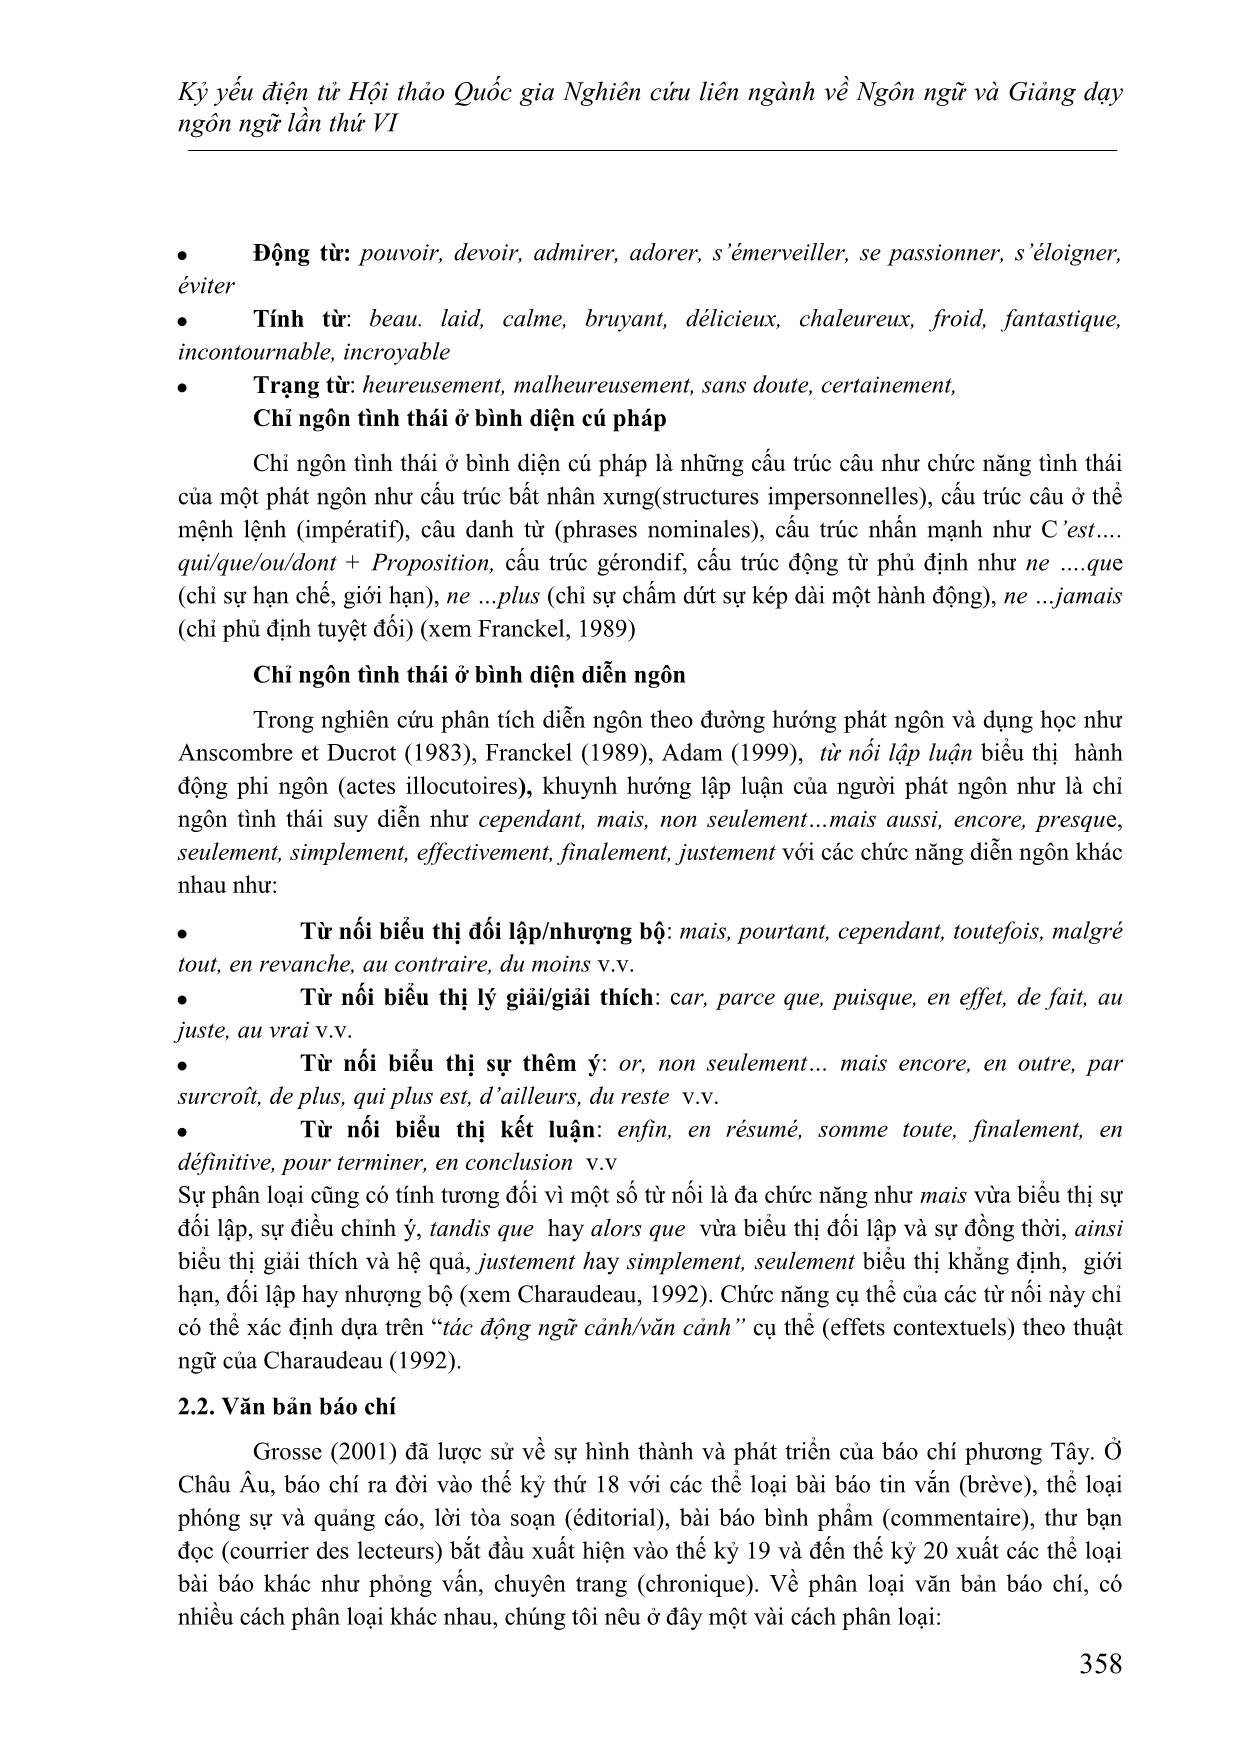 Nghiên cứu việc sử dụng chỉ ngôn tình thái ở các văn bản báo chí bình luận trong sách học tiếng Pháp Le Nouveau Taxi 3 trang 6